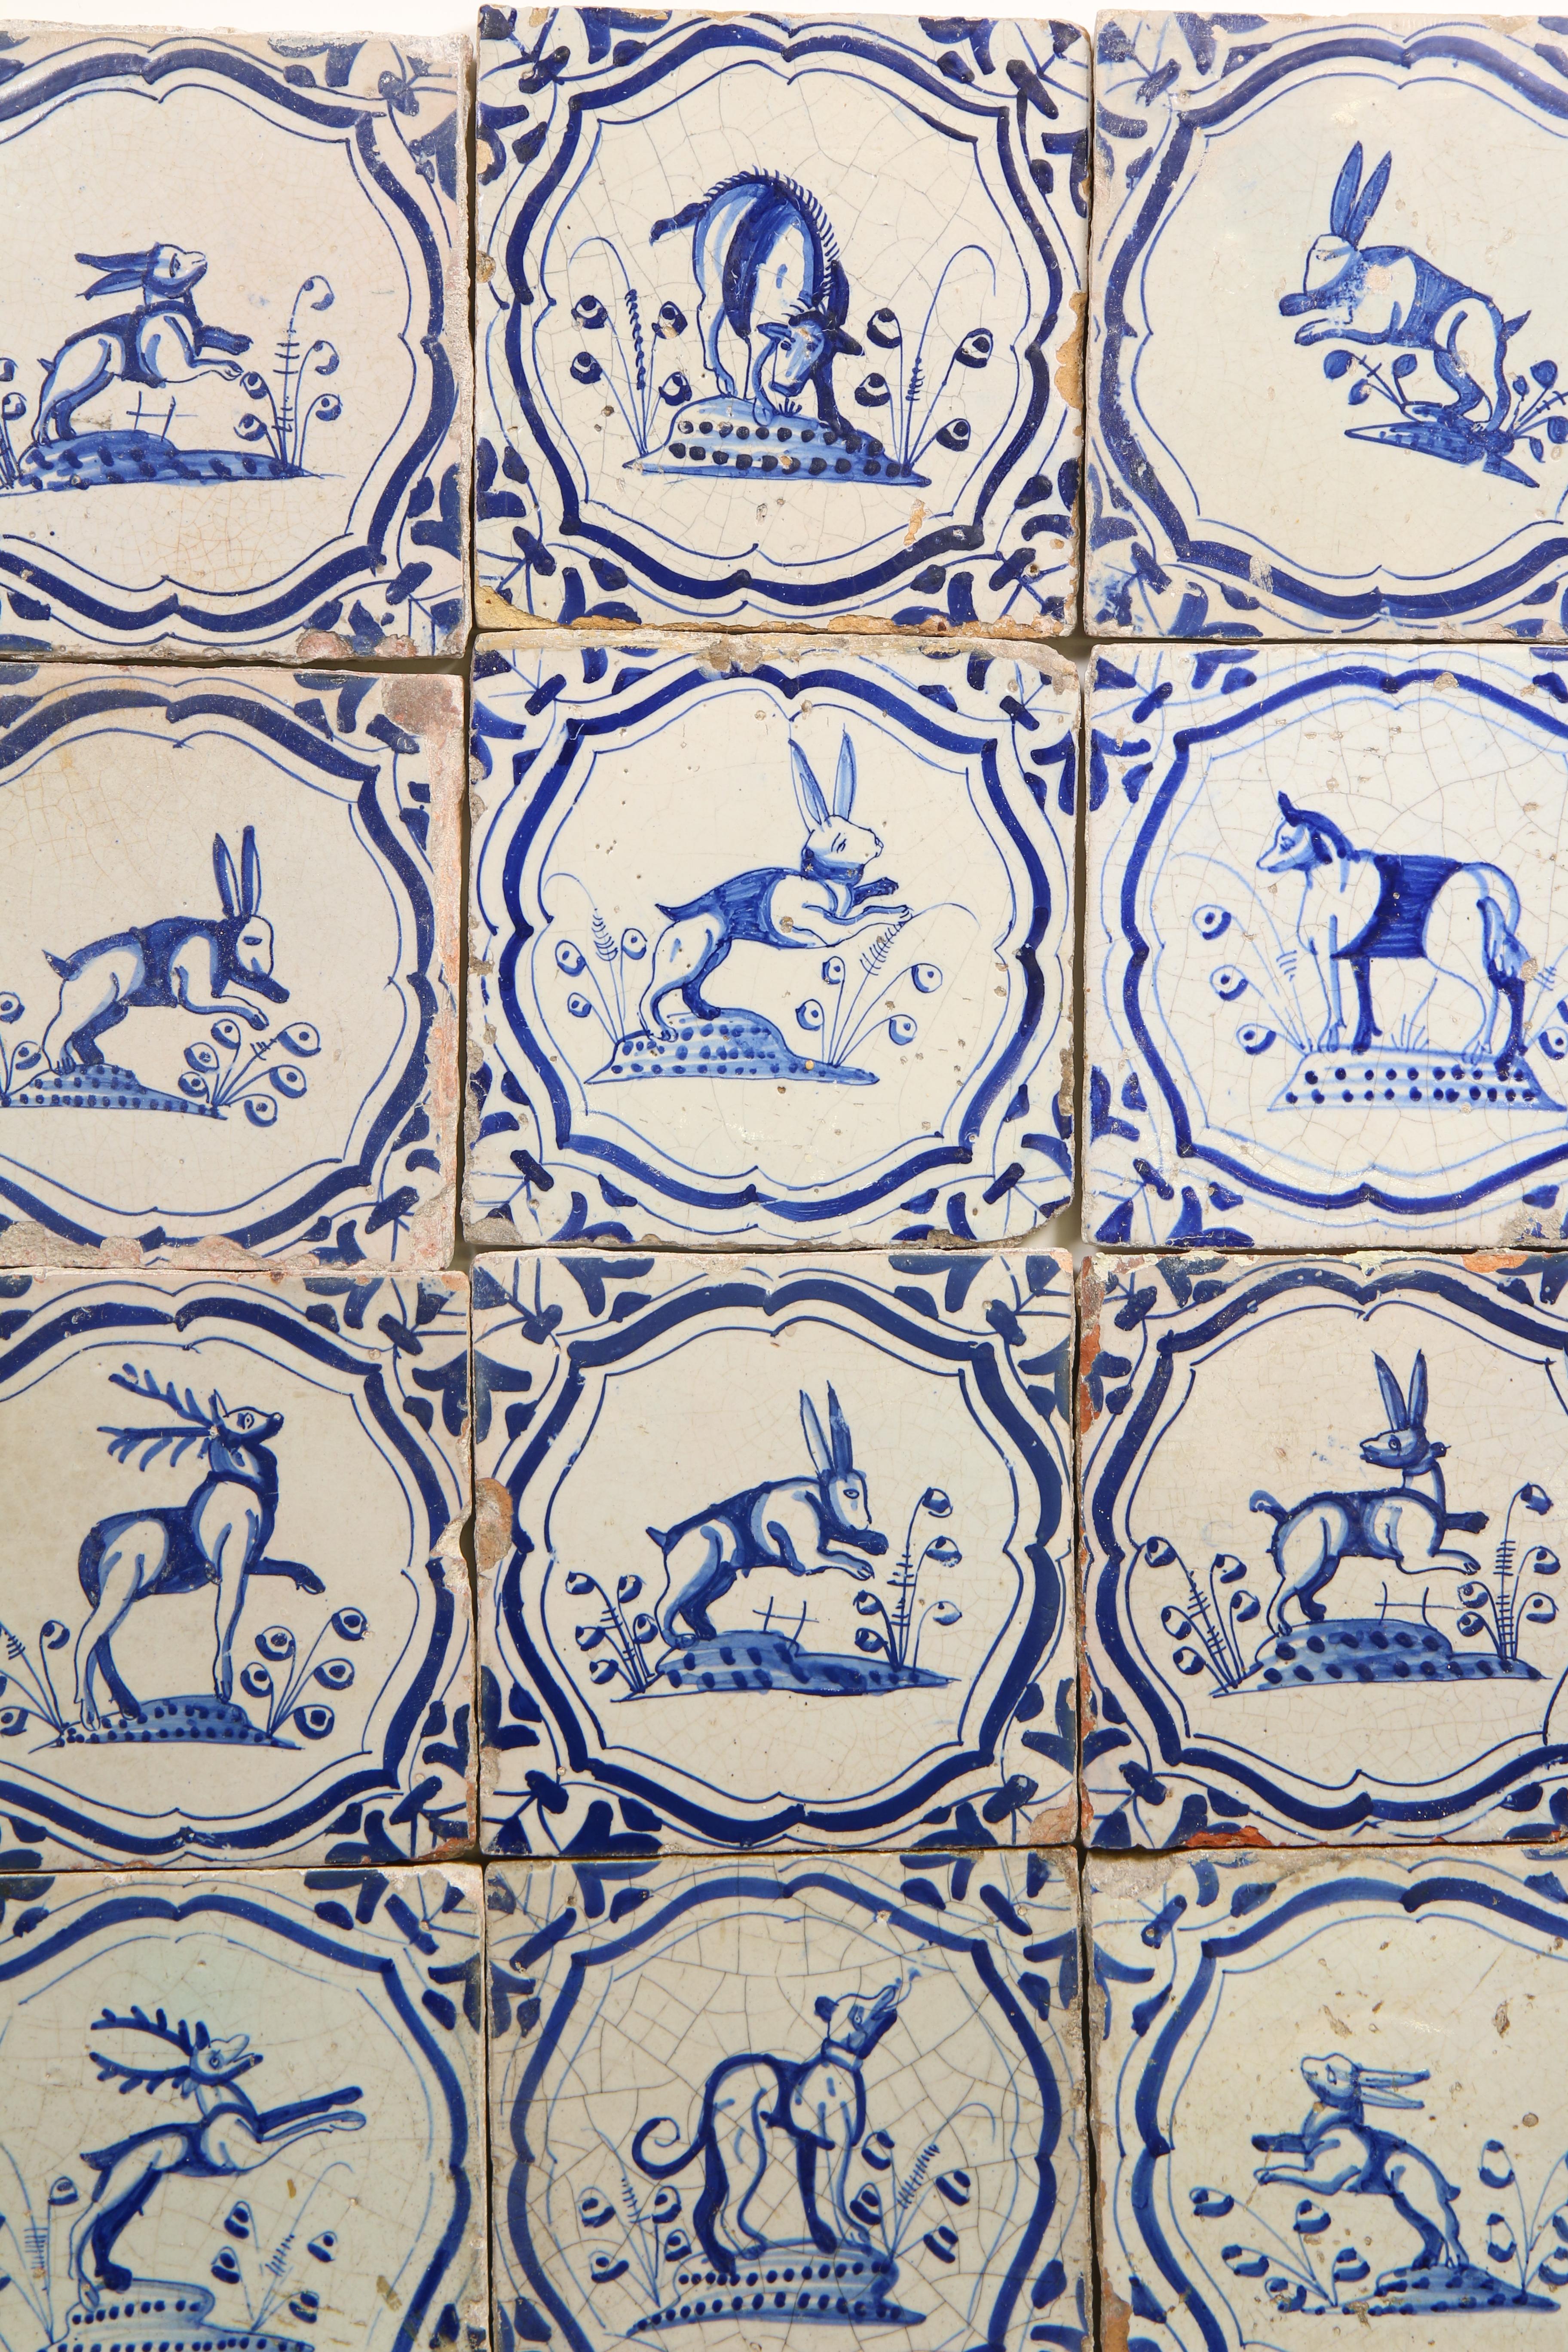 Twaalf blauw aardewerk dierendecor tegels, 1625-1650, - Image 2 of 3